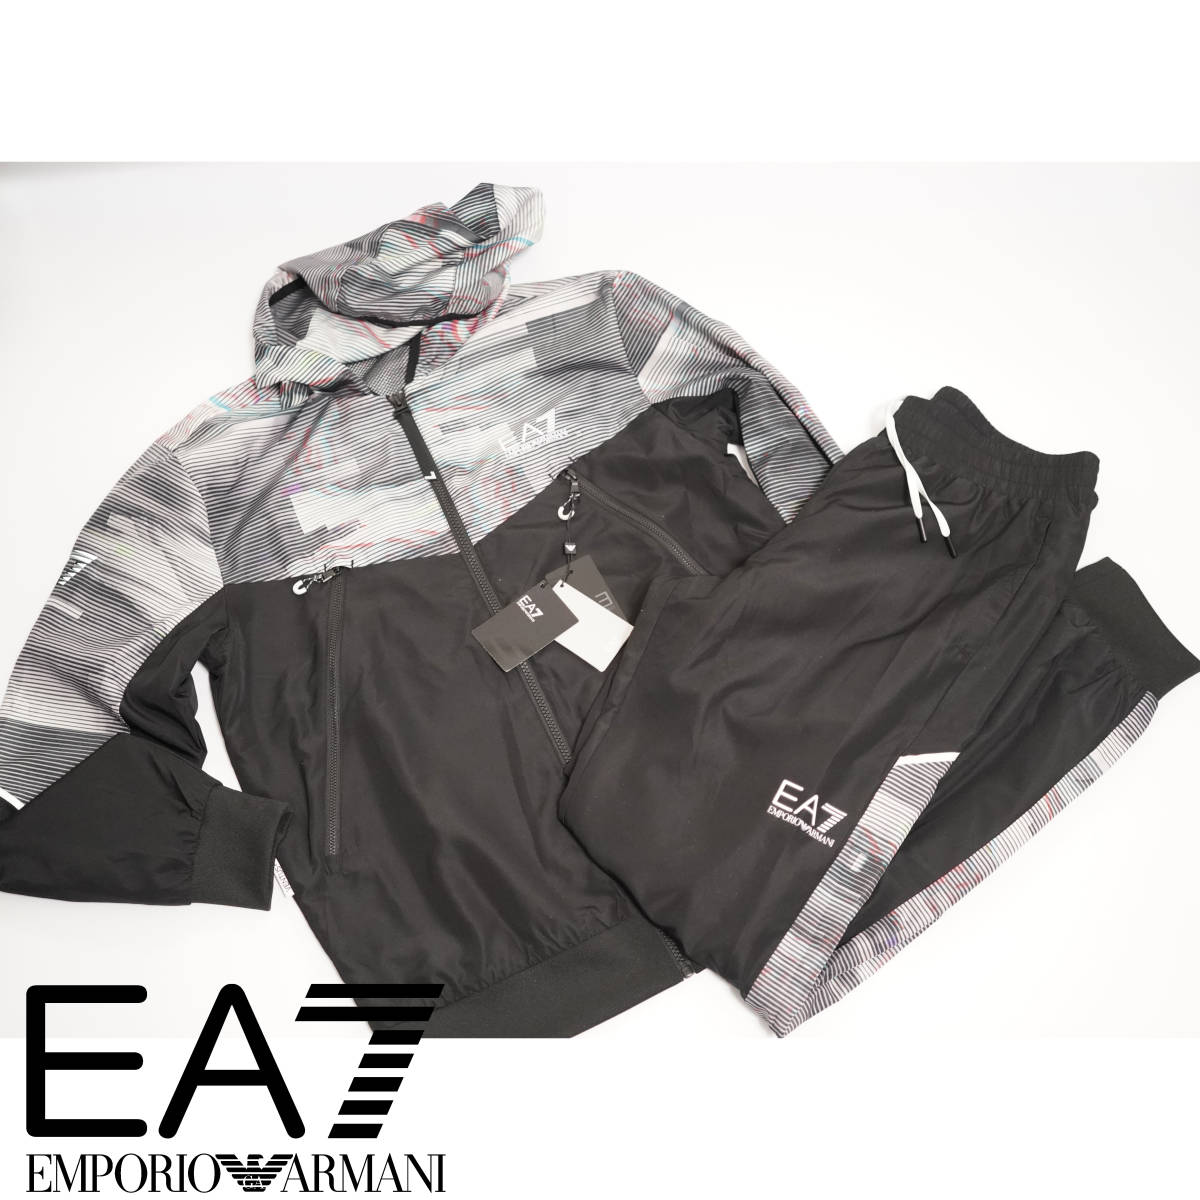 EA7 ラグジュアリースポーツモデル 上下ジャージ セットアップ EMPORIO ARMANI エンポリオアルマーニ Mサイズ トラックジャケット  パンツ